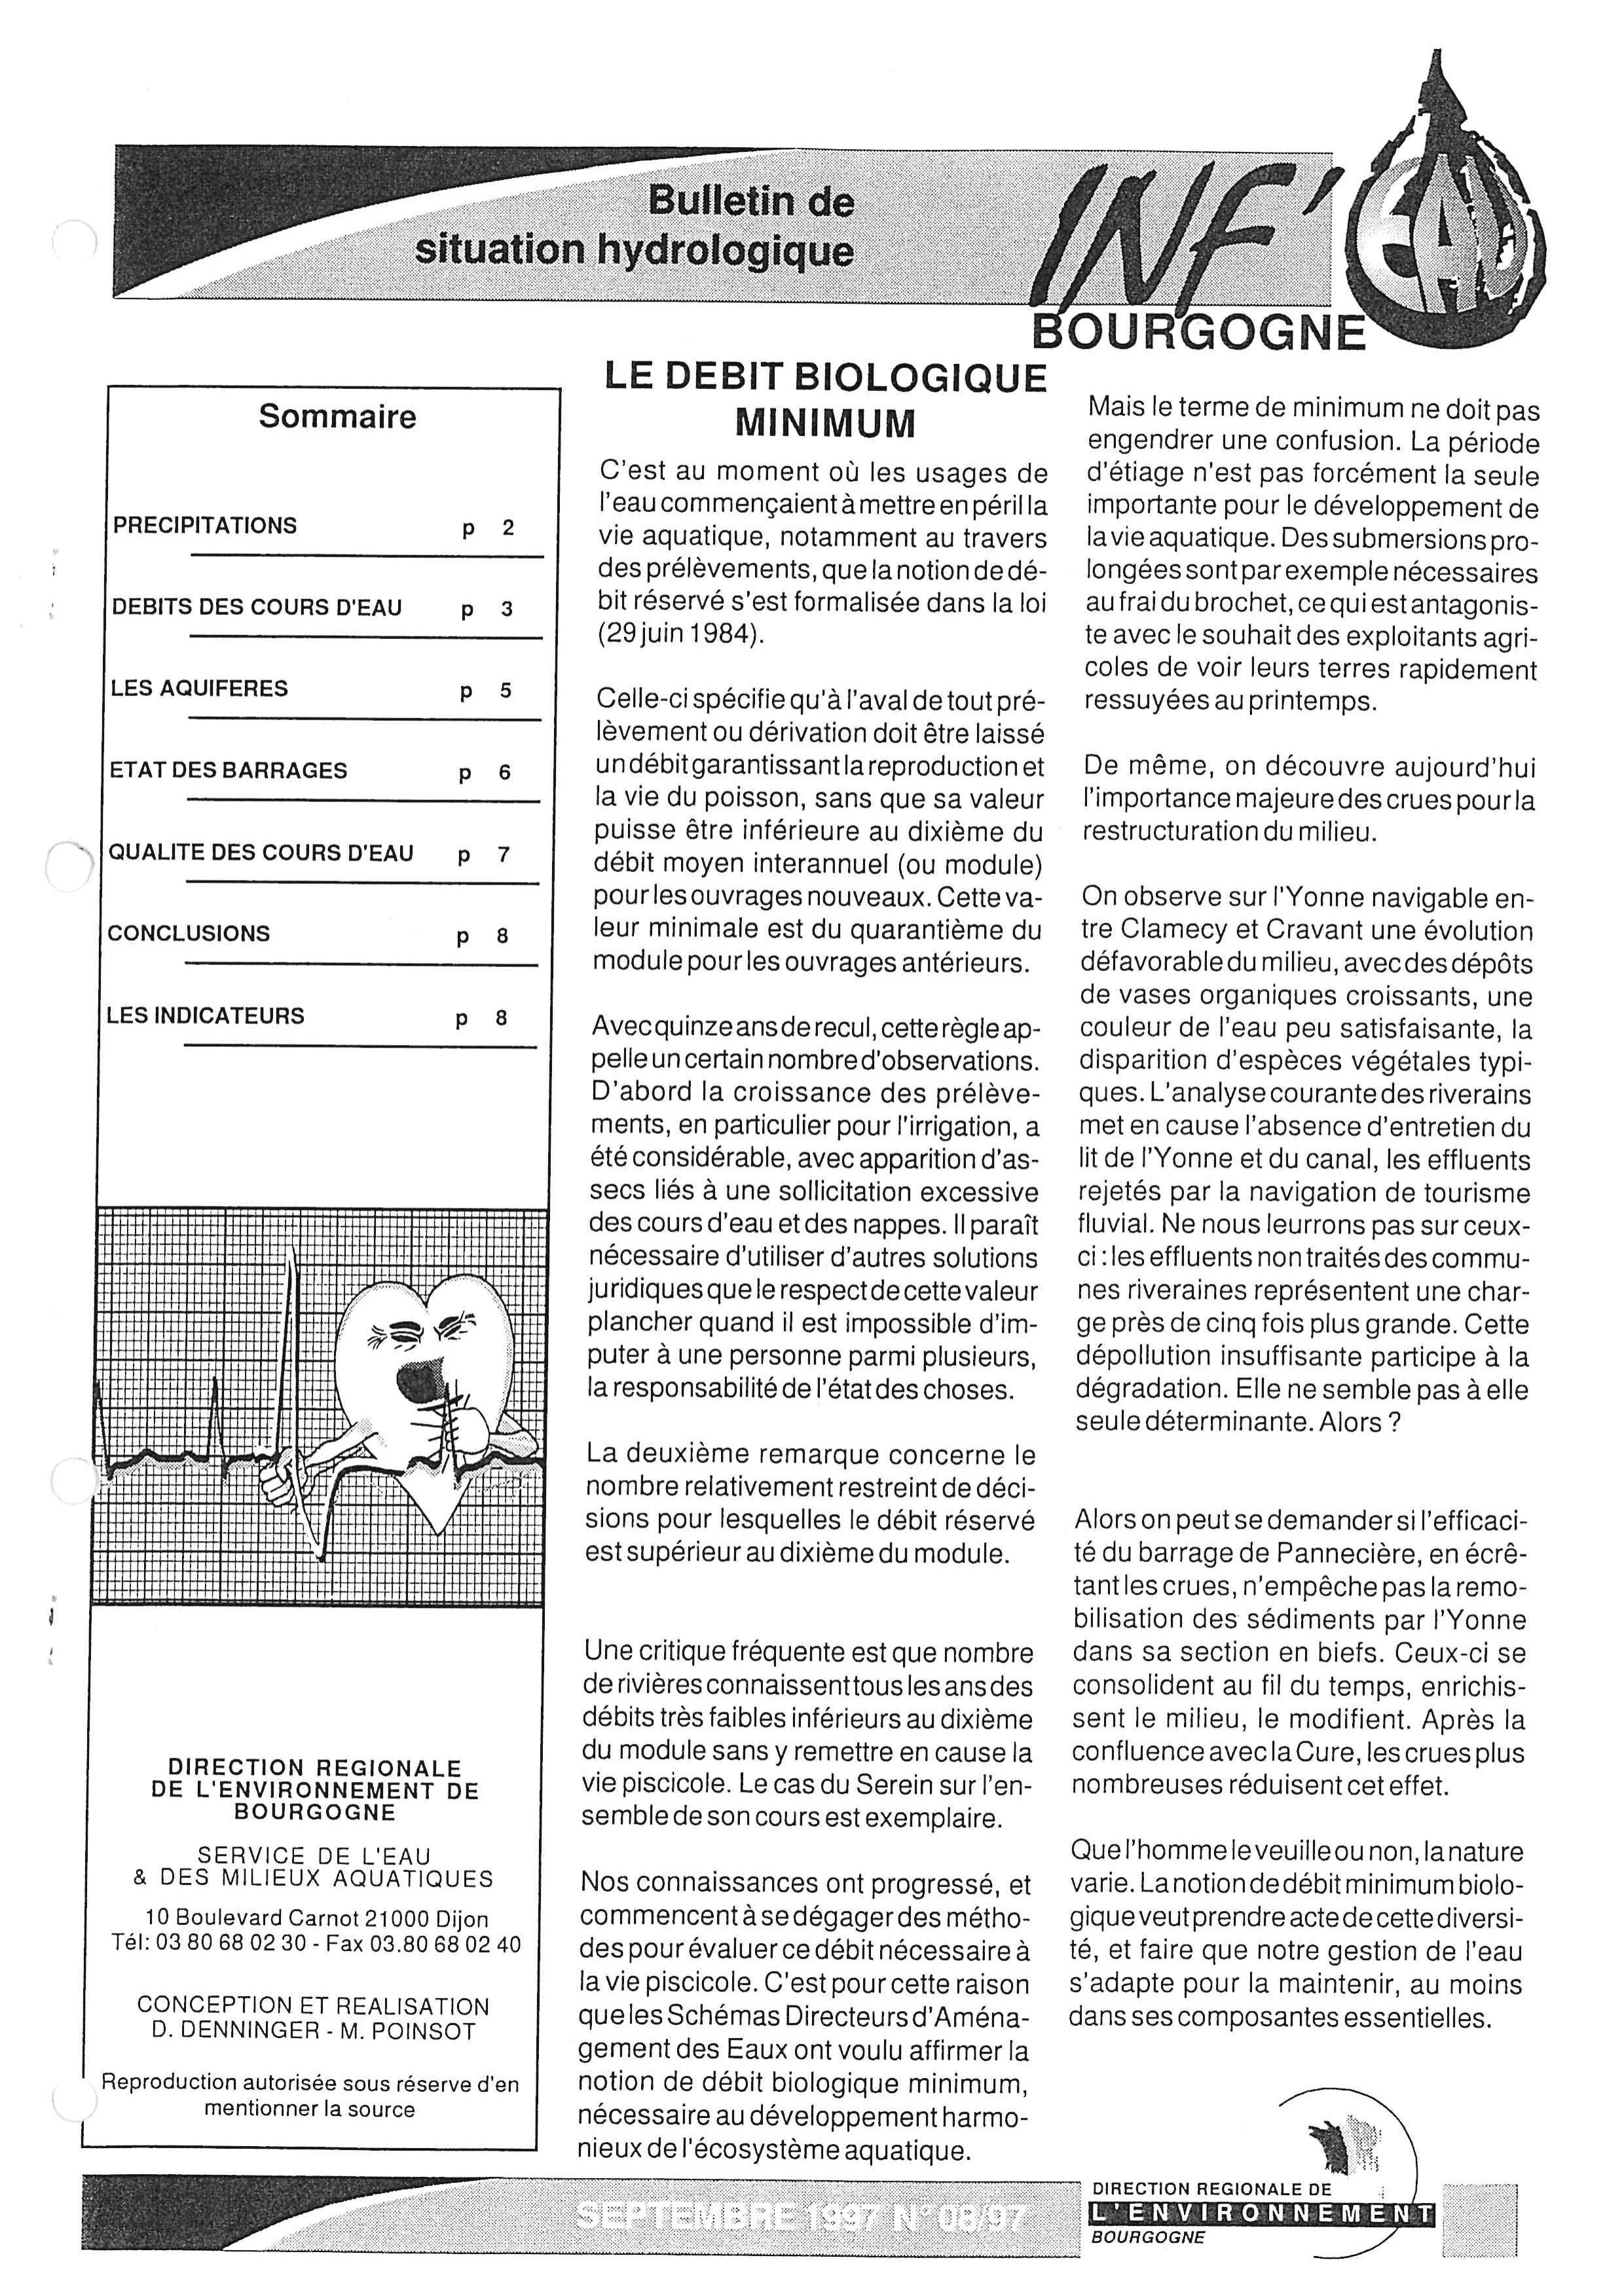 Bulletin hydrologique du mois d'août 1997